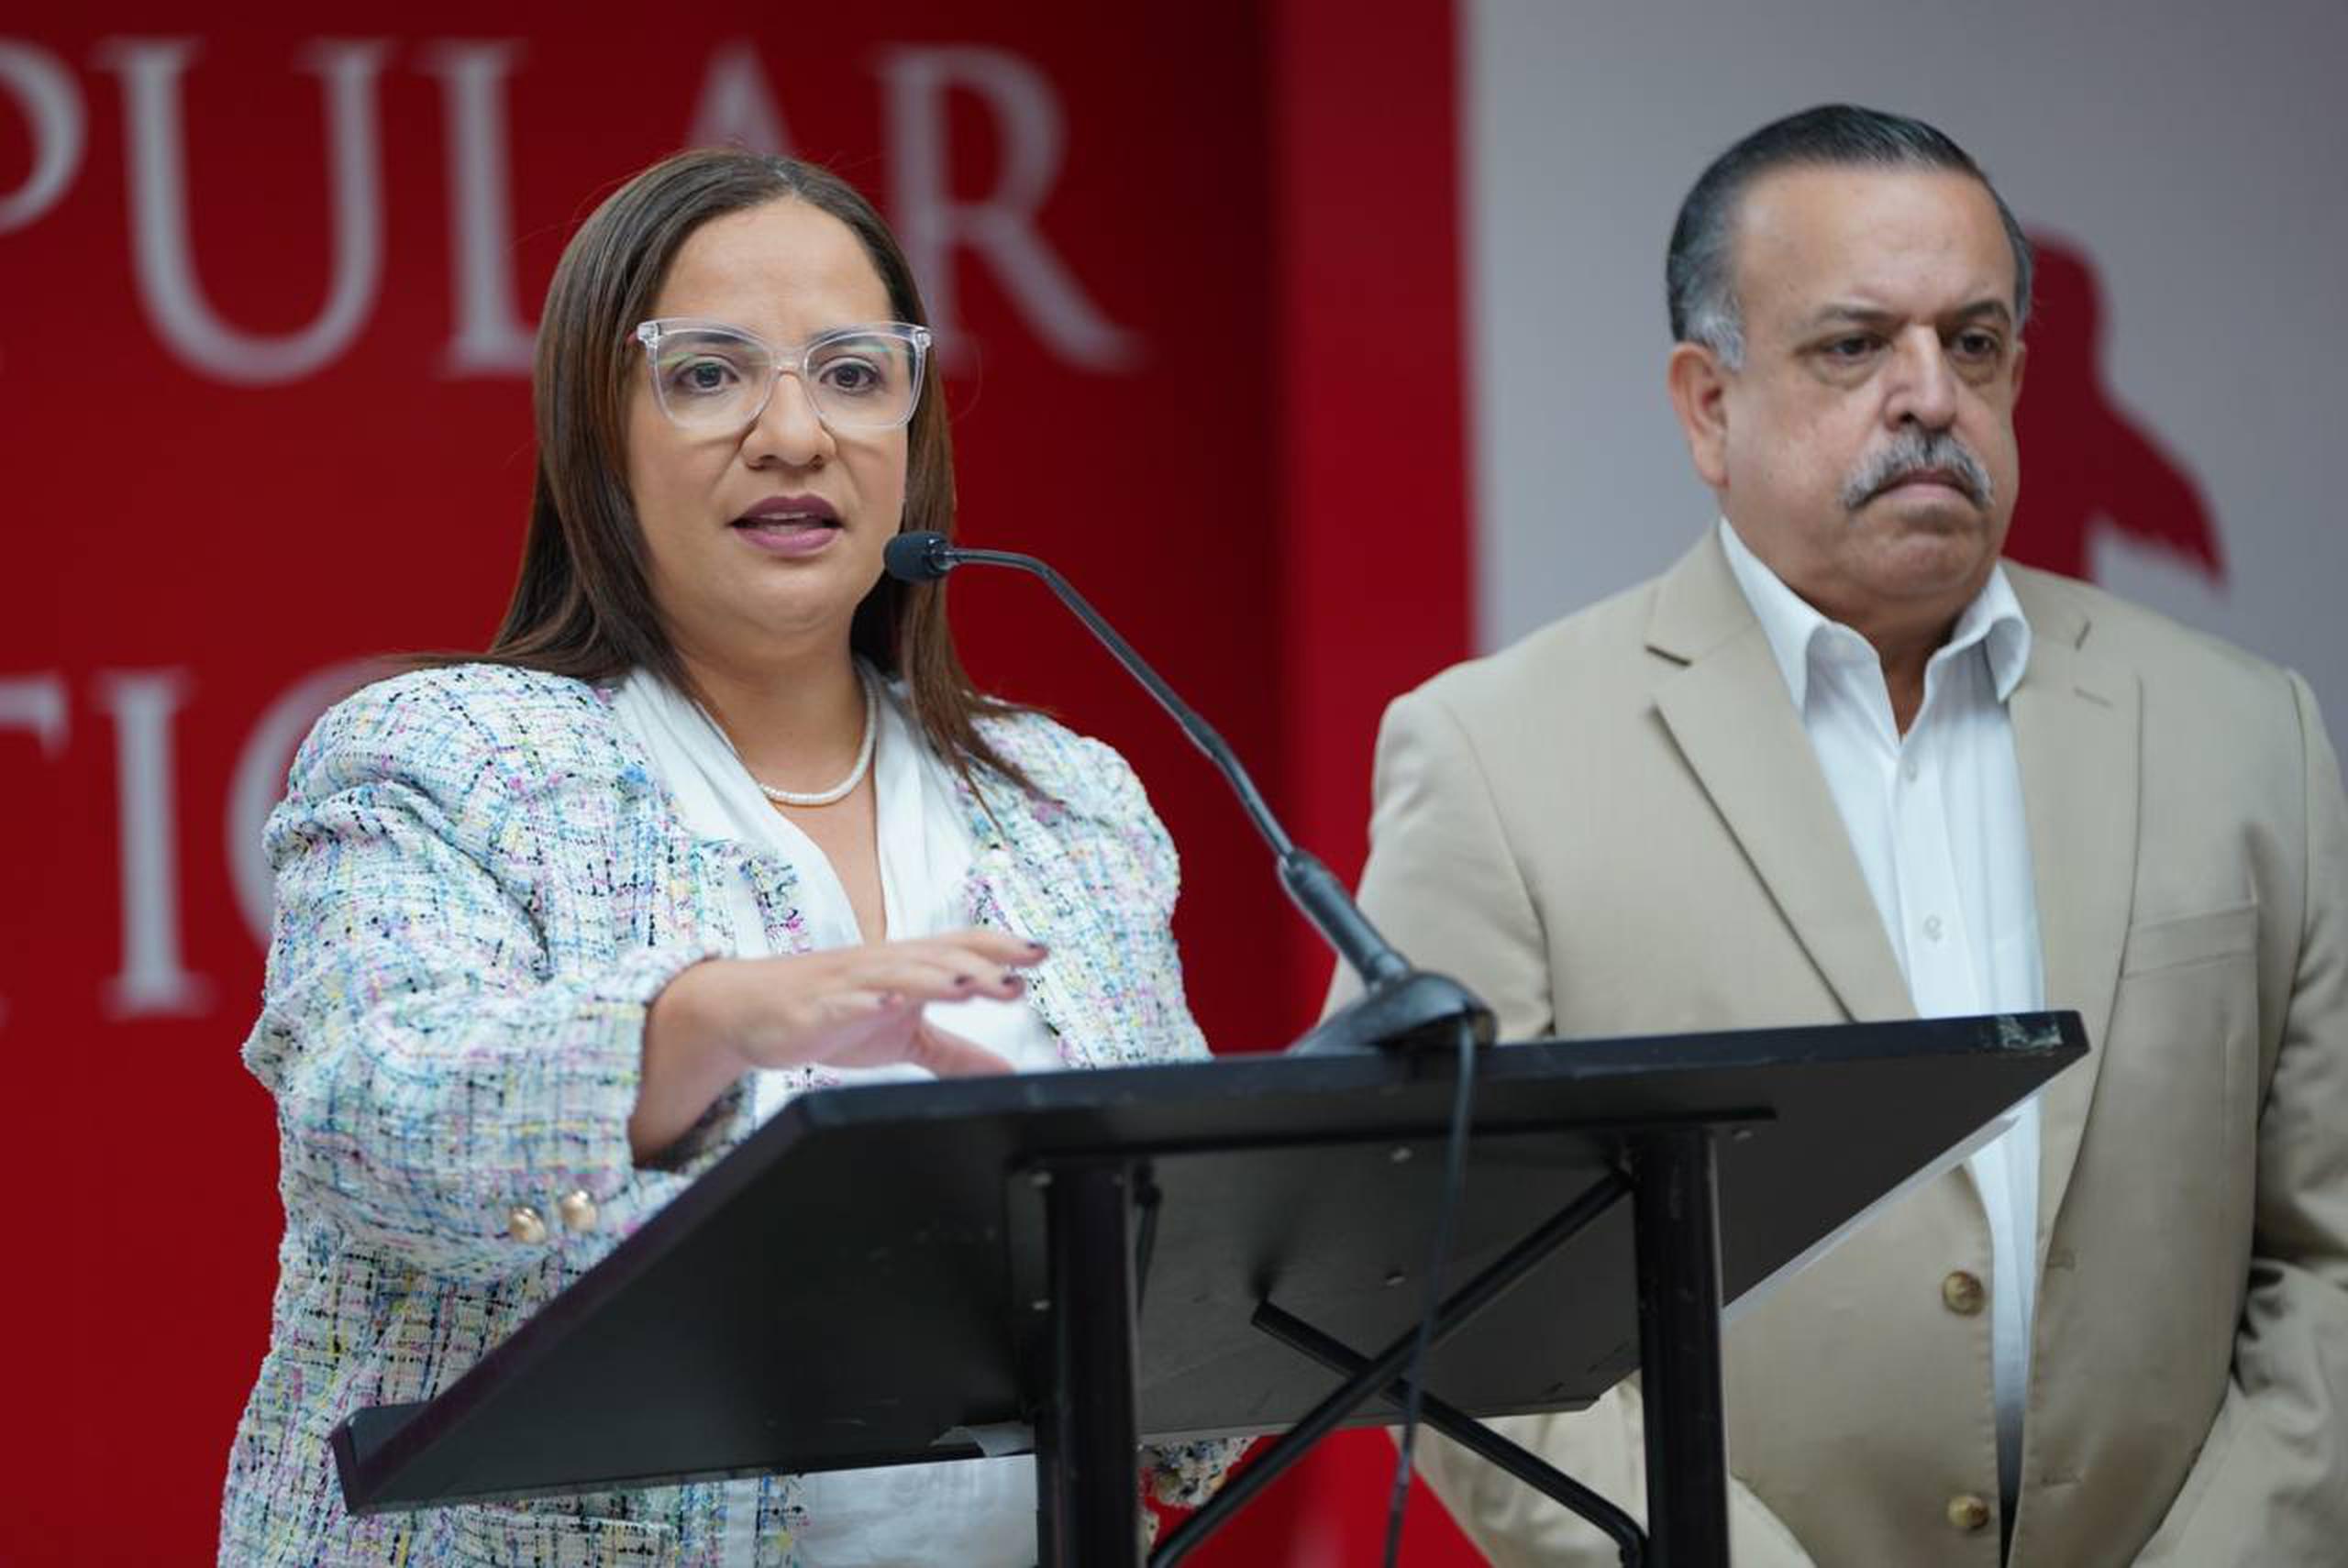 La comisionada electoral del PPD, Karla Angleró, y el secretario general del PPD, Gerardo "Toñito" Cruz.